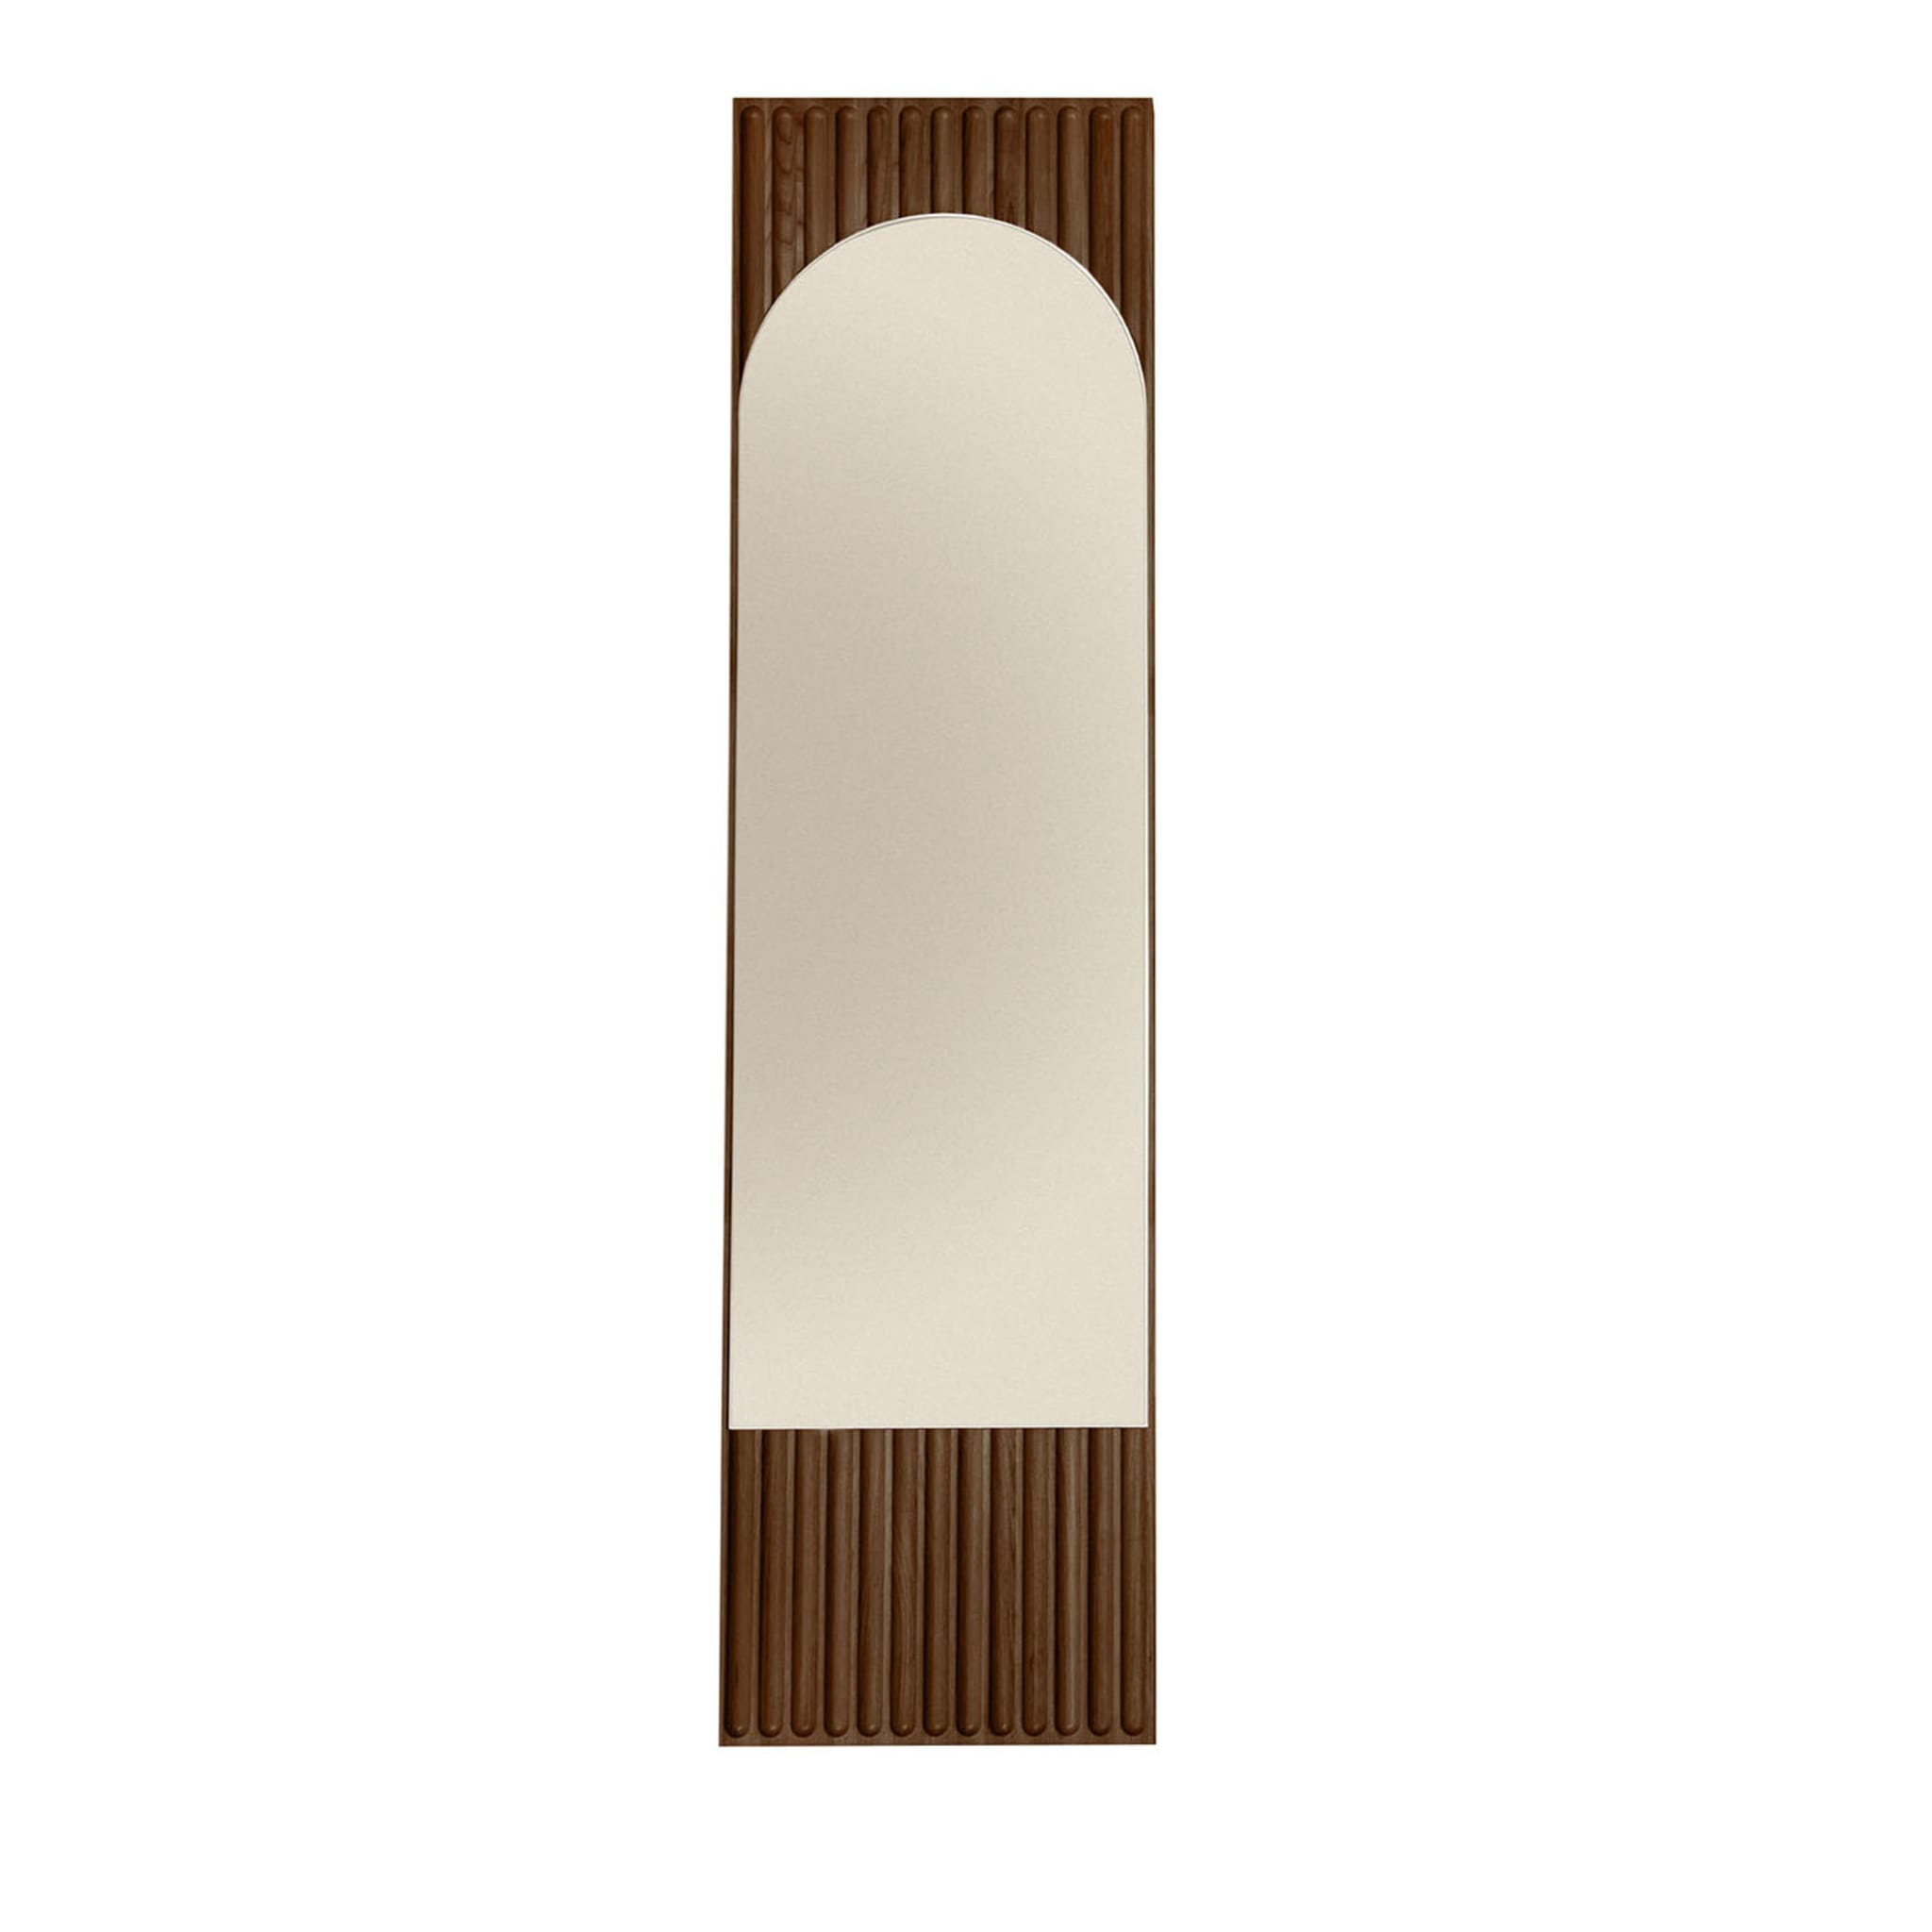 Tutto Sesto Specchio rettangolare in frassino marrone - Vista principale